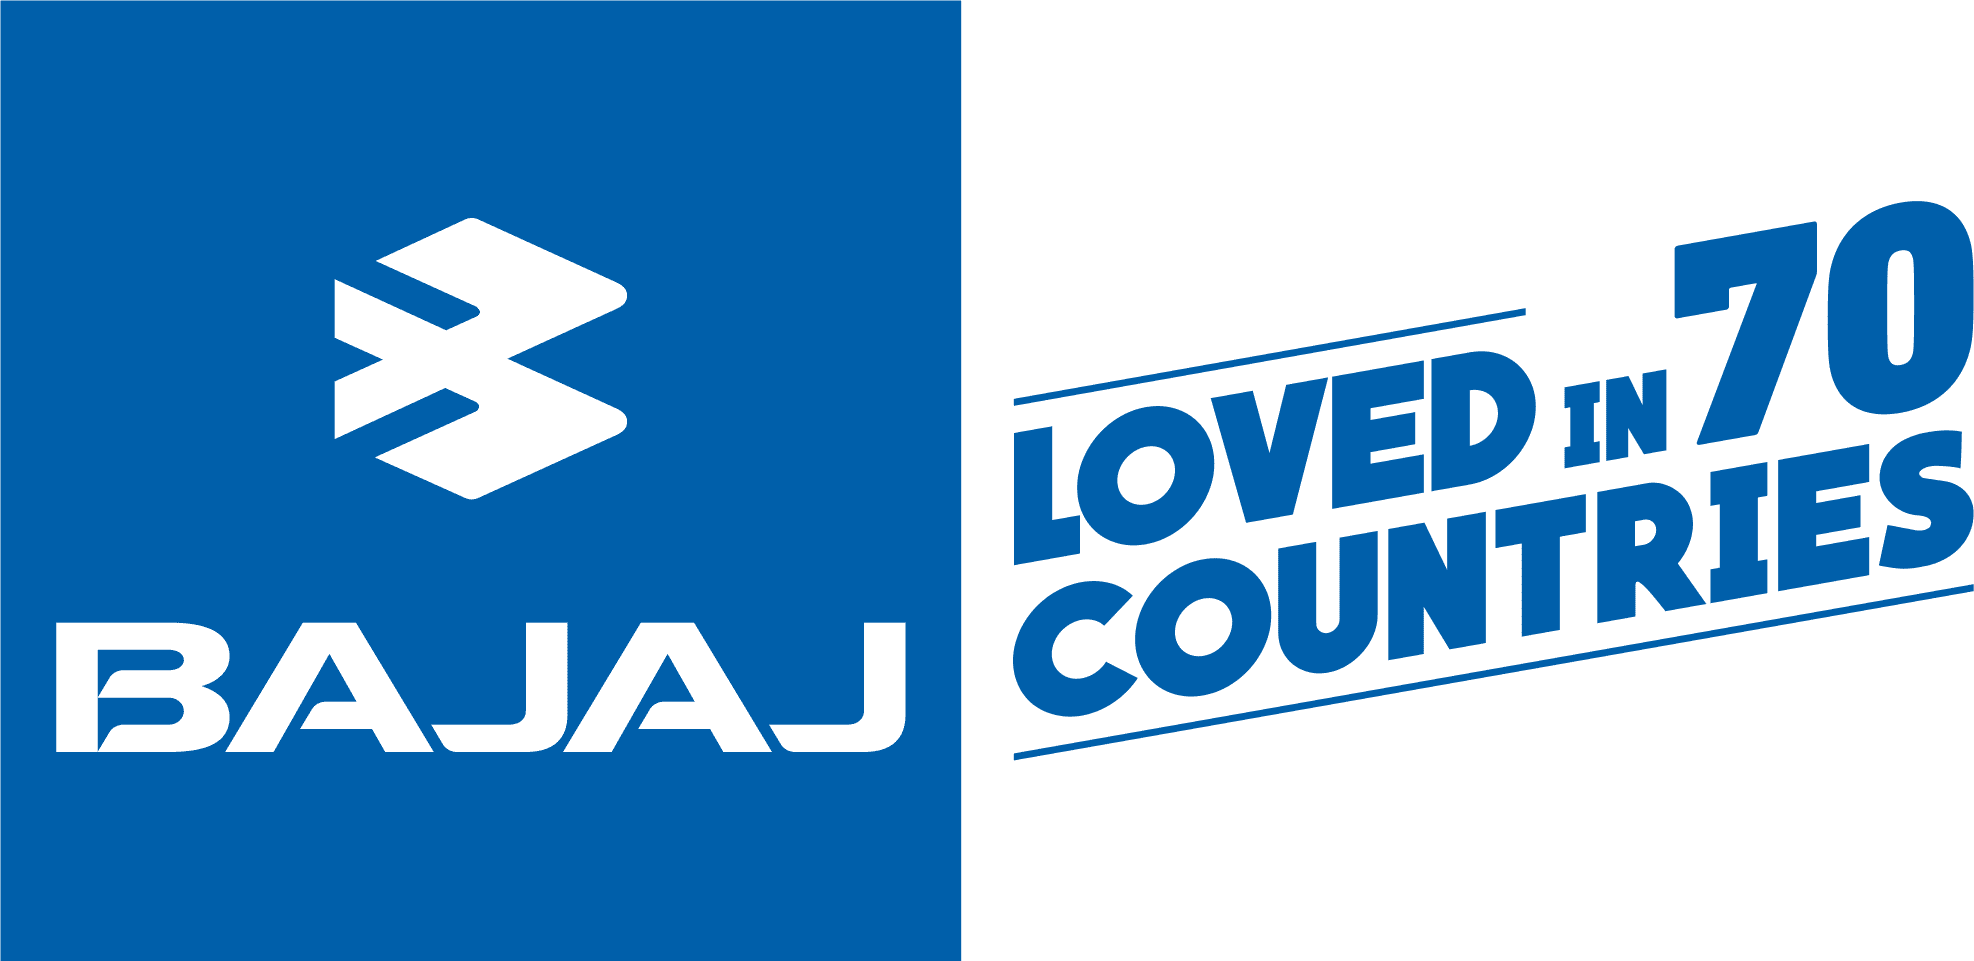 bajaj-logo-new